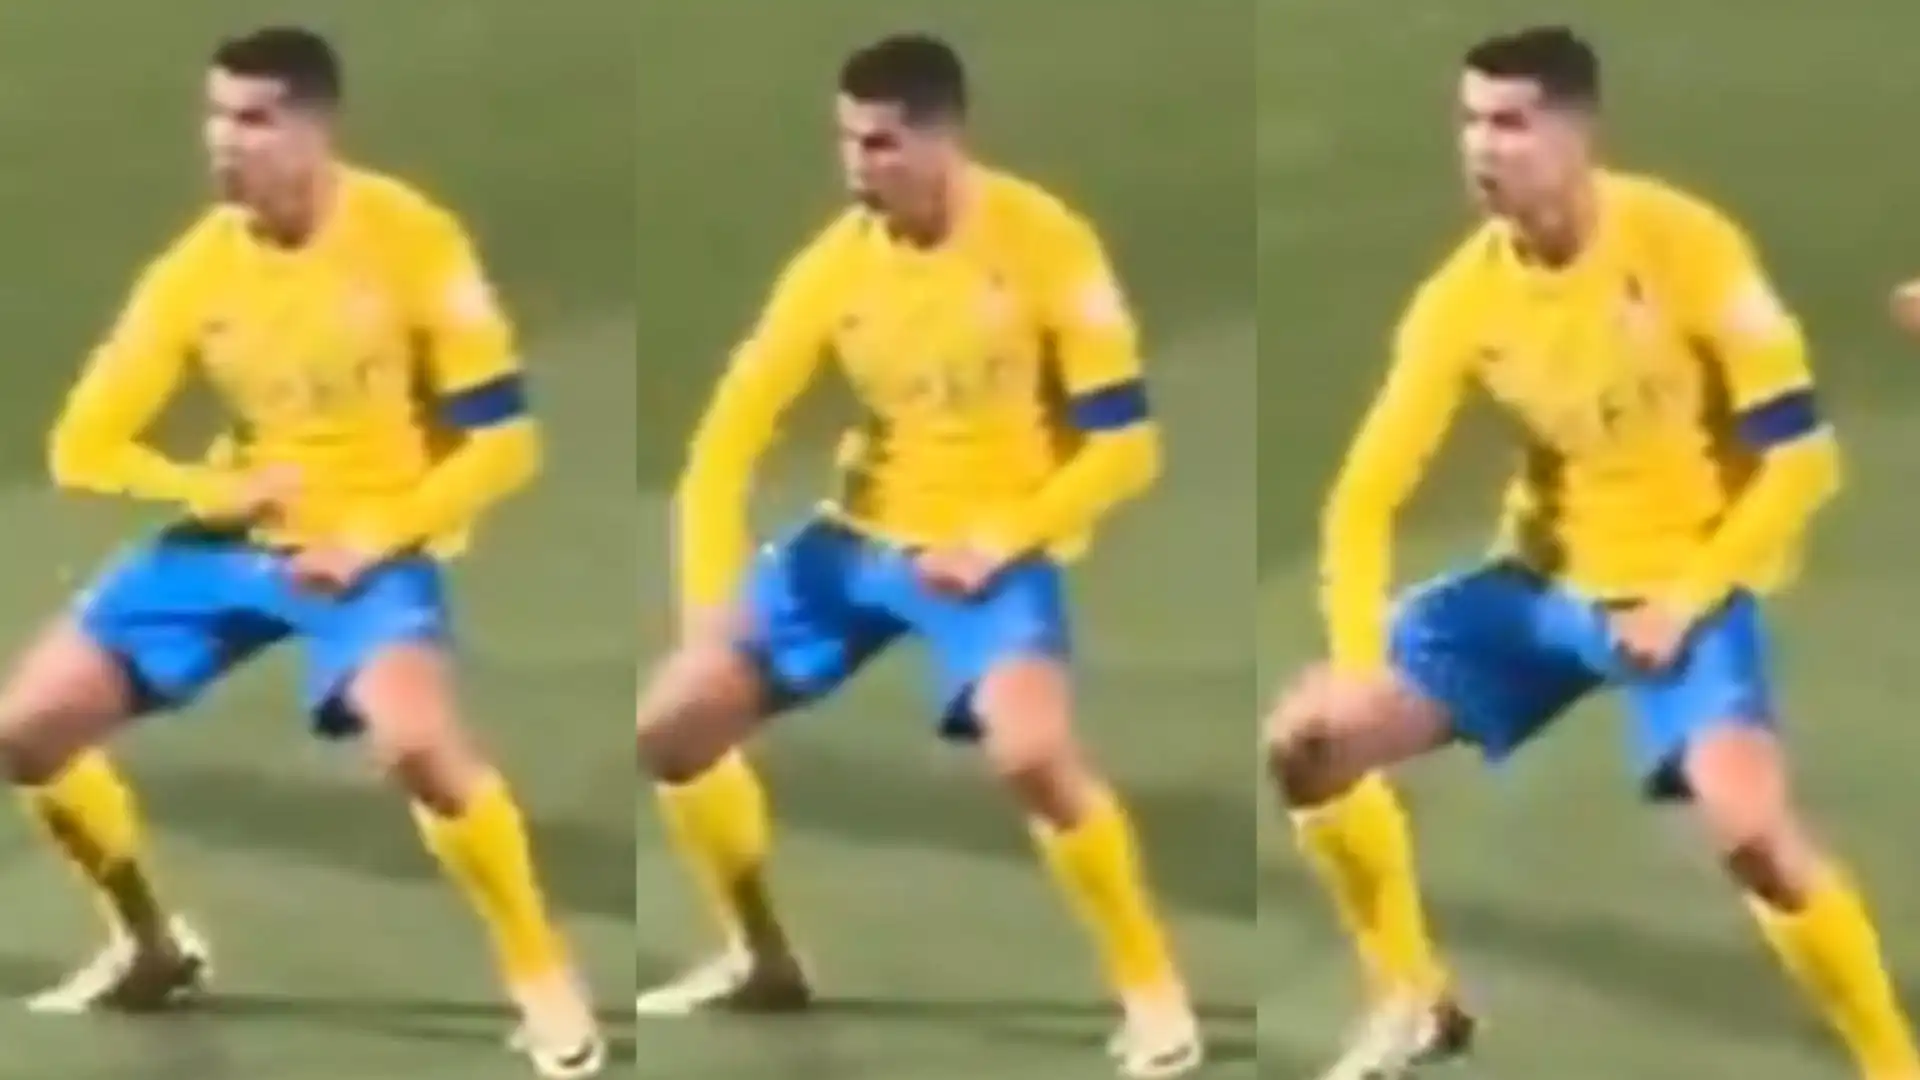 Dopo aver sentito i cori per Lionel Messi, Ronaldo aveva risposto con un gesto osceno